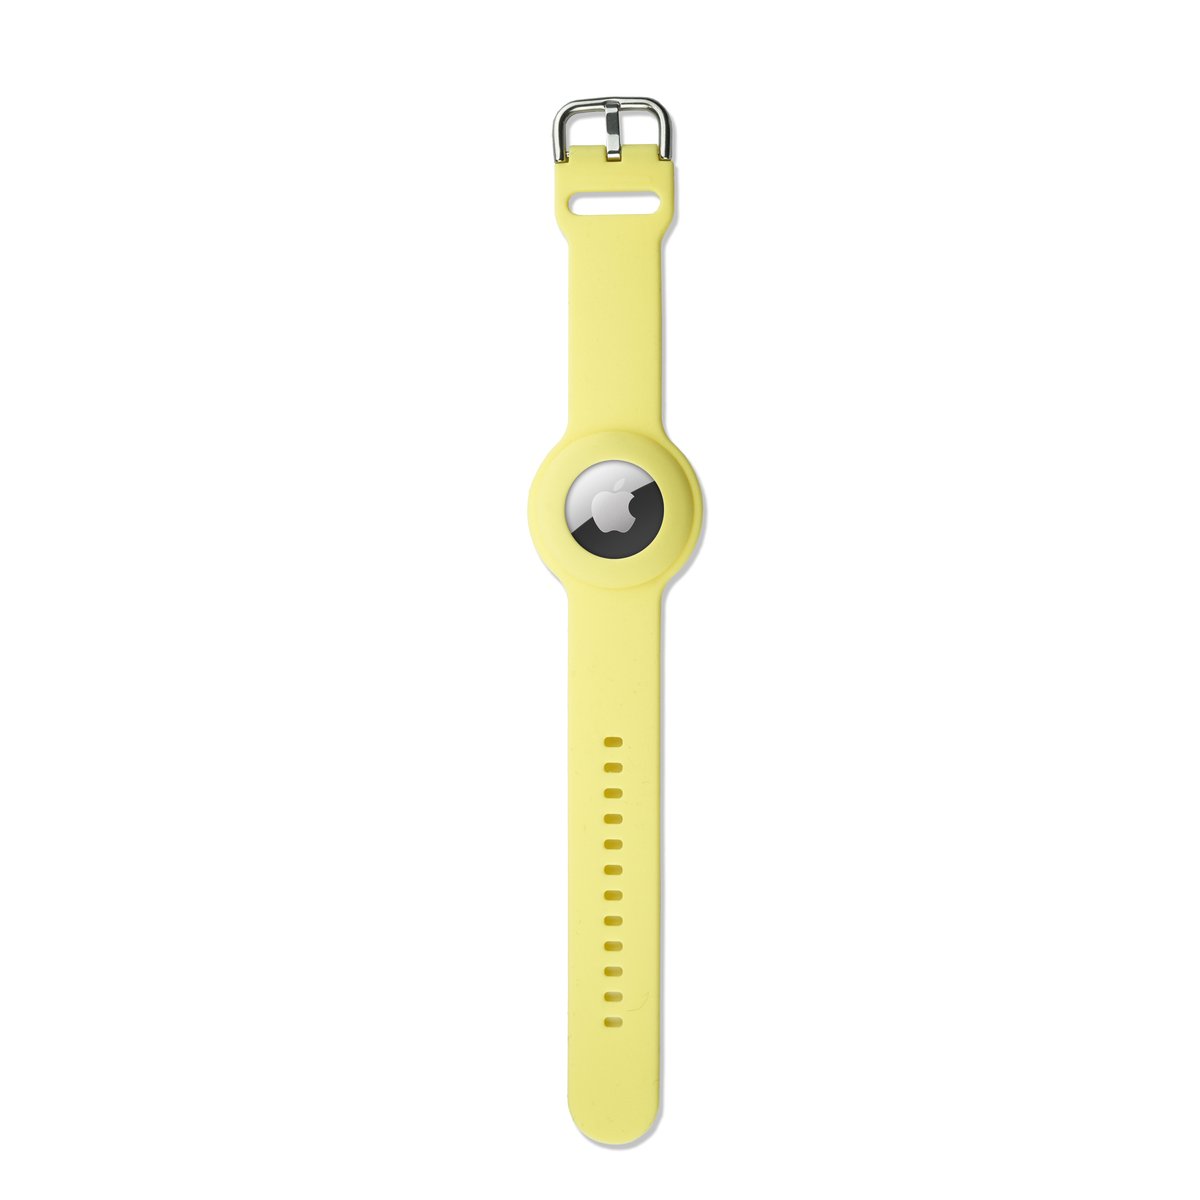 Ainy Apple Airtag horlogeband voor Kinderen - GPS tracker polsband - armband met veilige gespsluiting - veelzijdig jongens meisjes accessoire - Geel